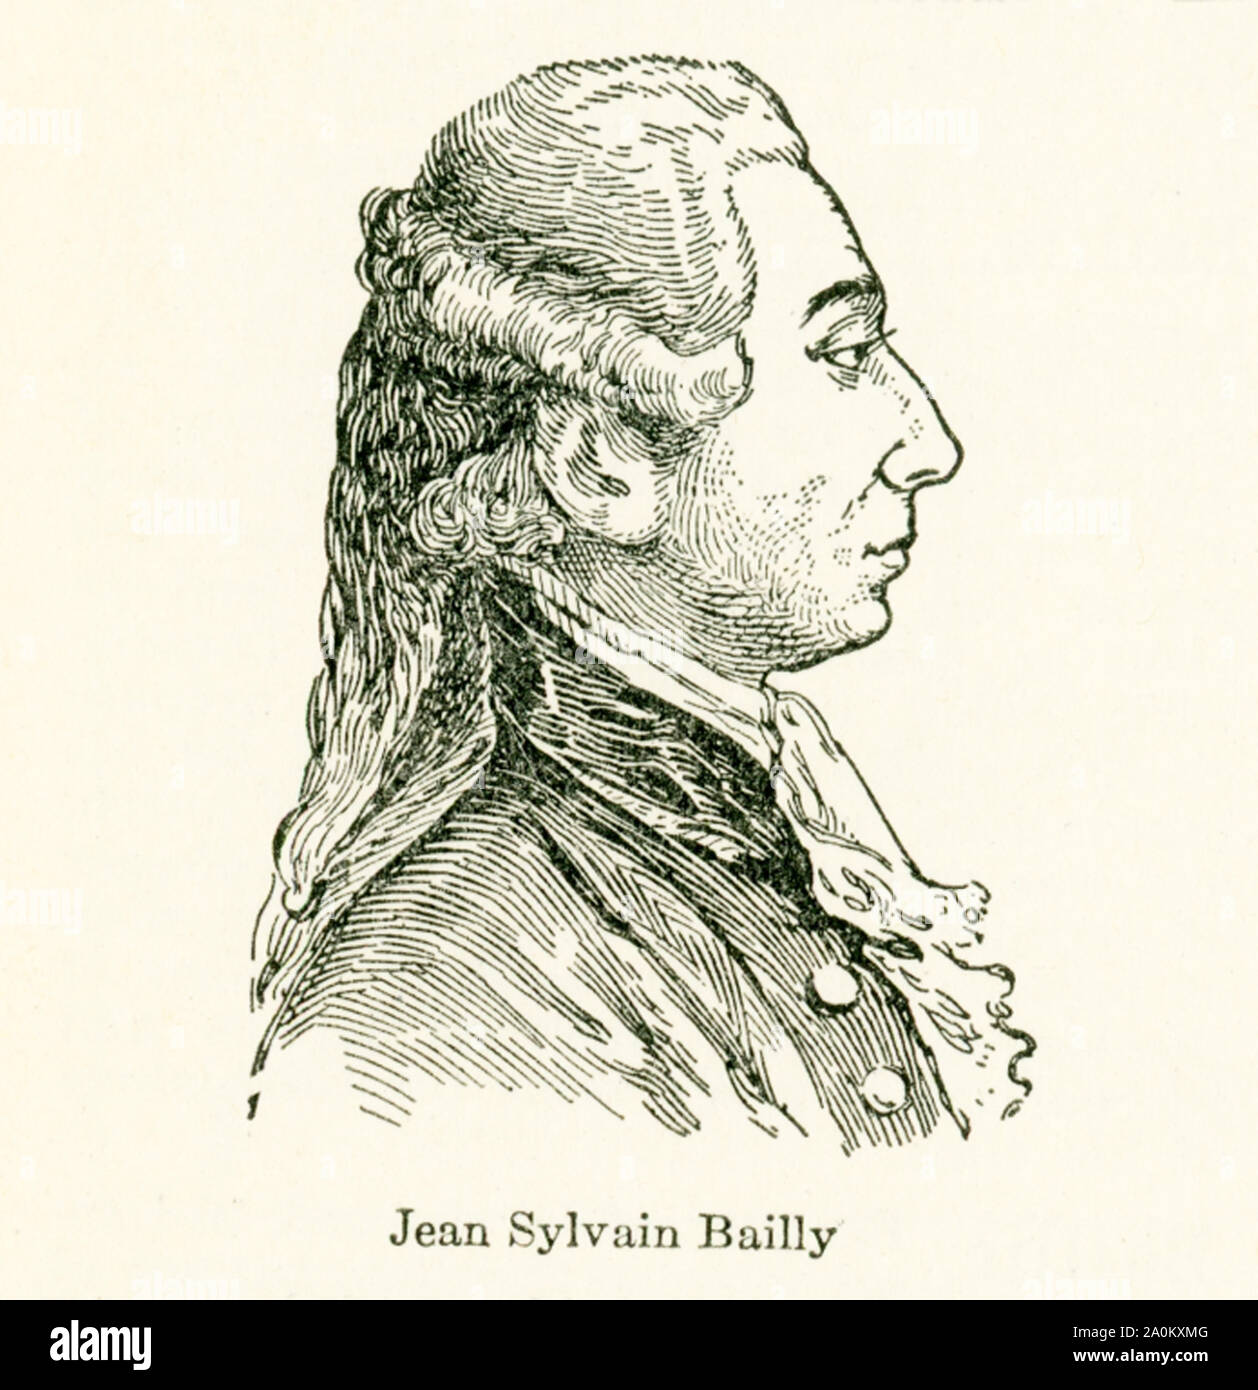 Cette illustration de Jean Sylvain Bailly (1736-1793) dates pour le début des années 20. Jean Sylvain Bailly était un astronome Français, mathématicien, franc-maçon, et leader politique de la première partie de la Révolution française. Il a présidé la cour de tennis serment, a été maire de Paris de 1789 à 1791, et ont finalement été guillotinée pendant la terreur. Banque D'Images